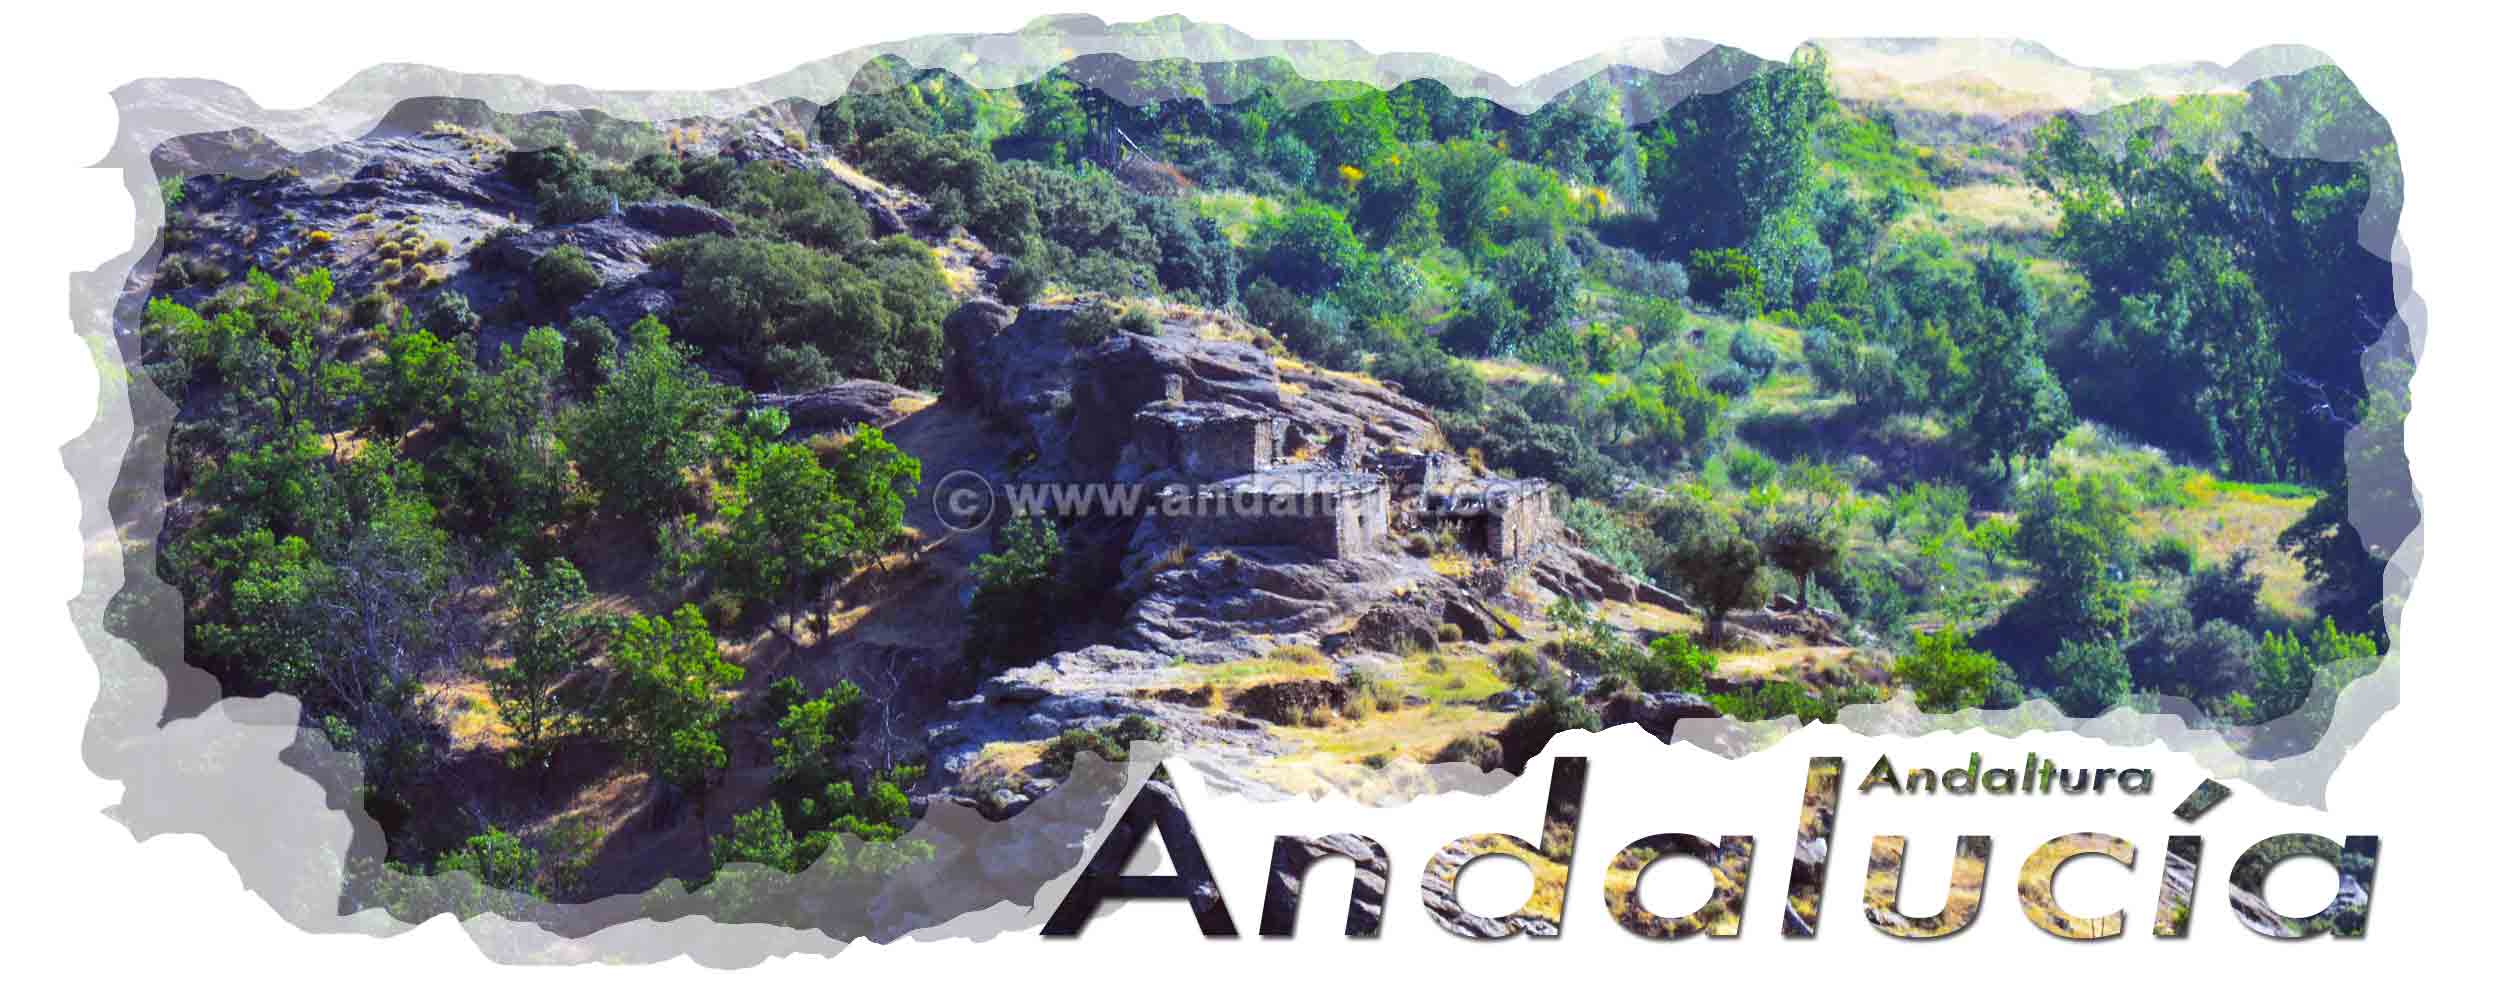 Cabecera Relieve de Andalucía - Ruinas de la Mezquita de Busquístar en la Alpujarra Granadina